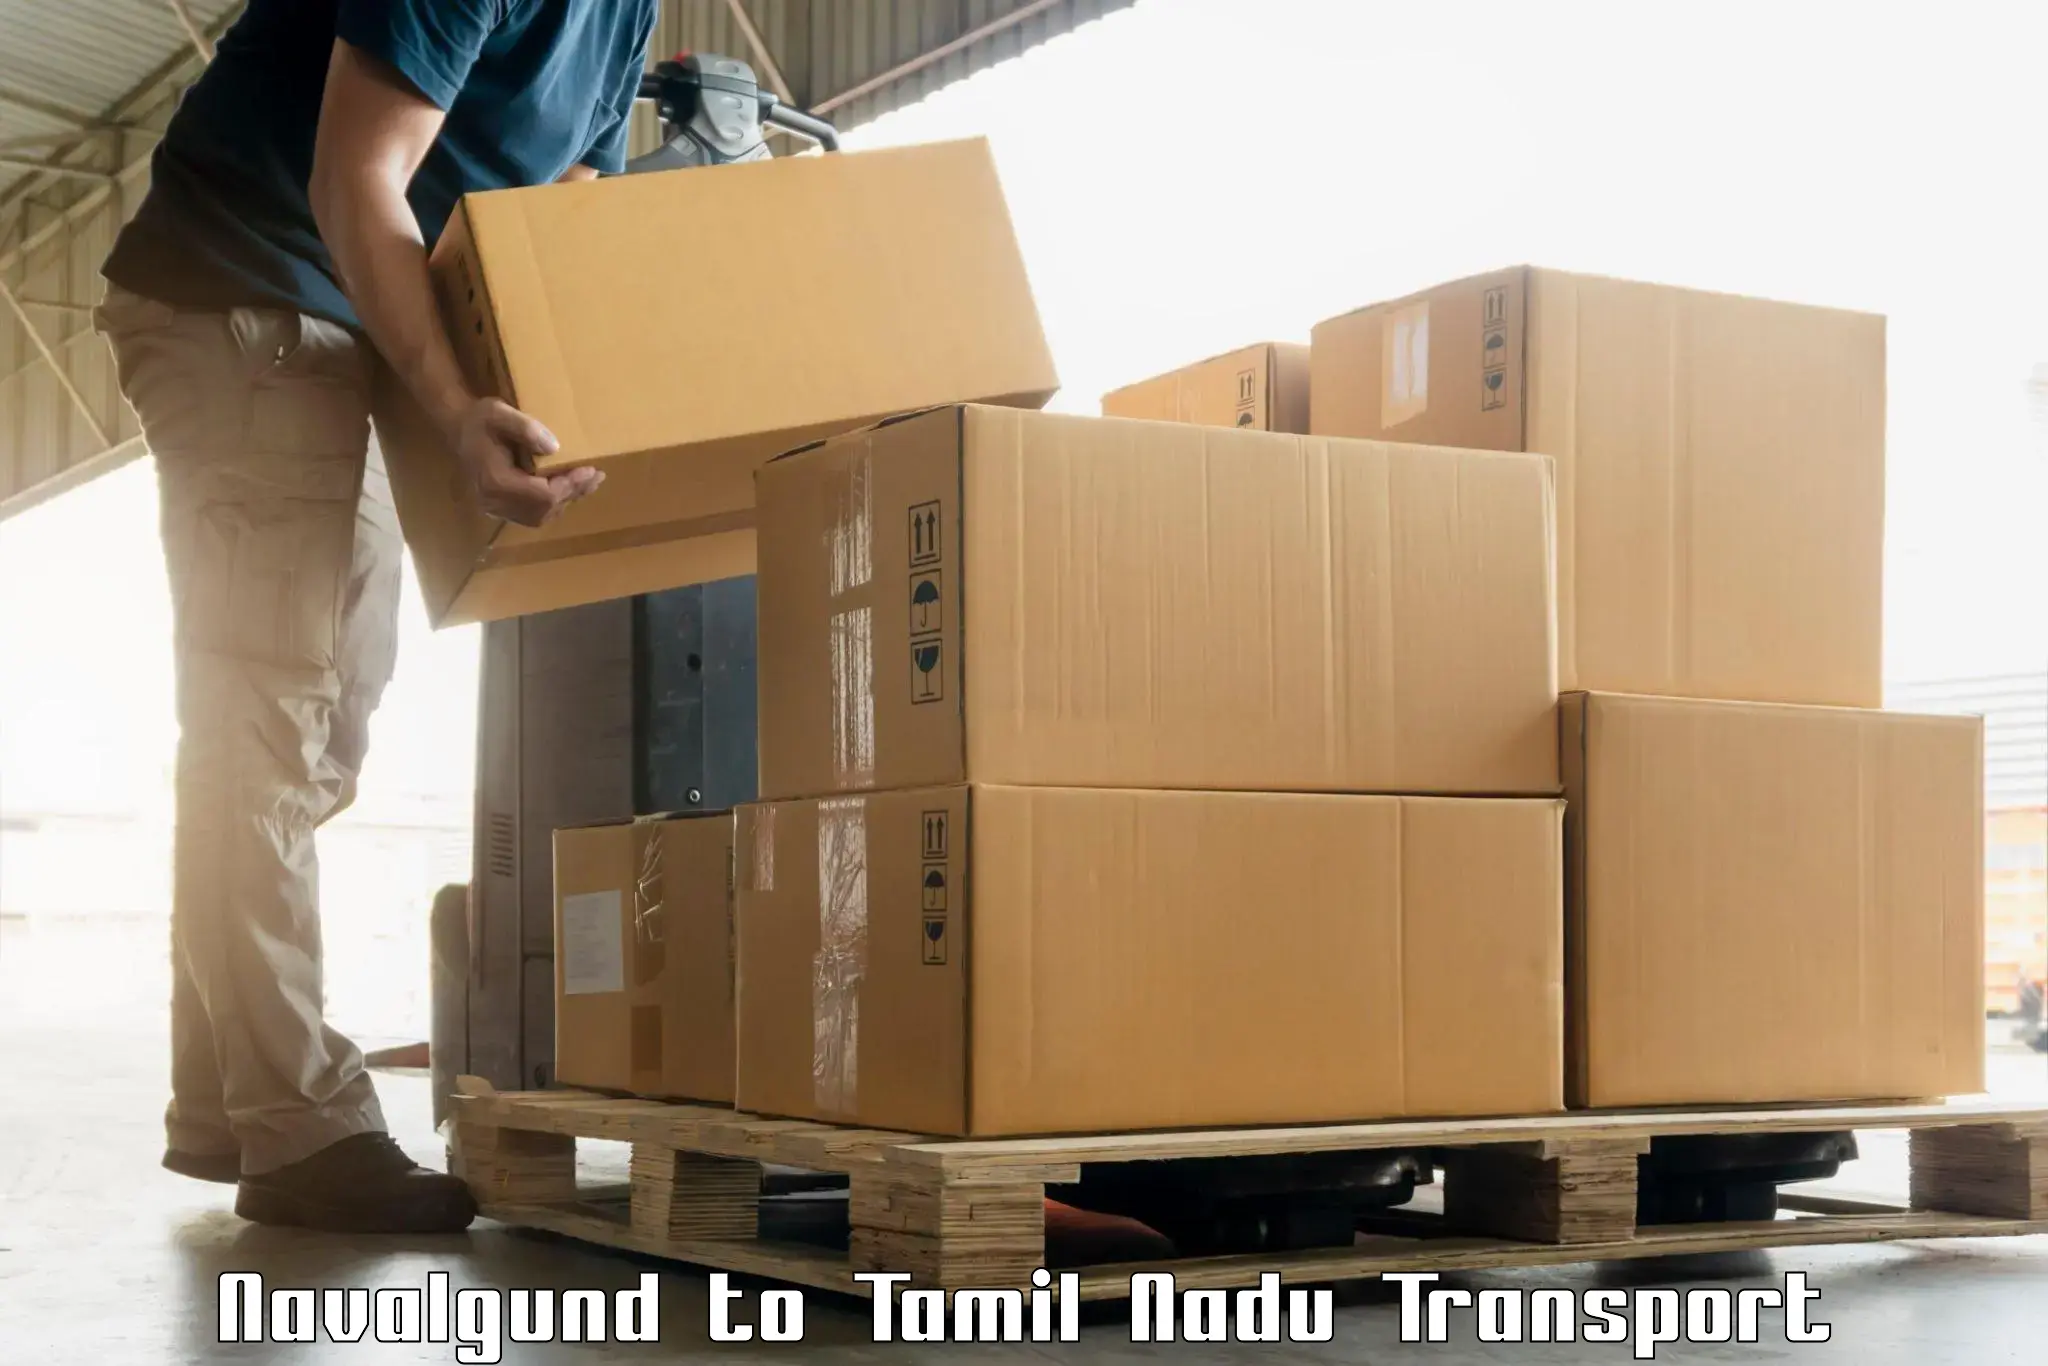 Online transport Navalgund to The Gandhigram Rural Institute